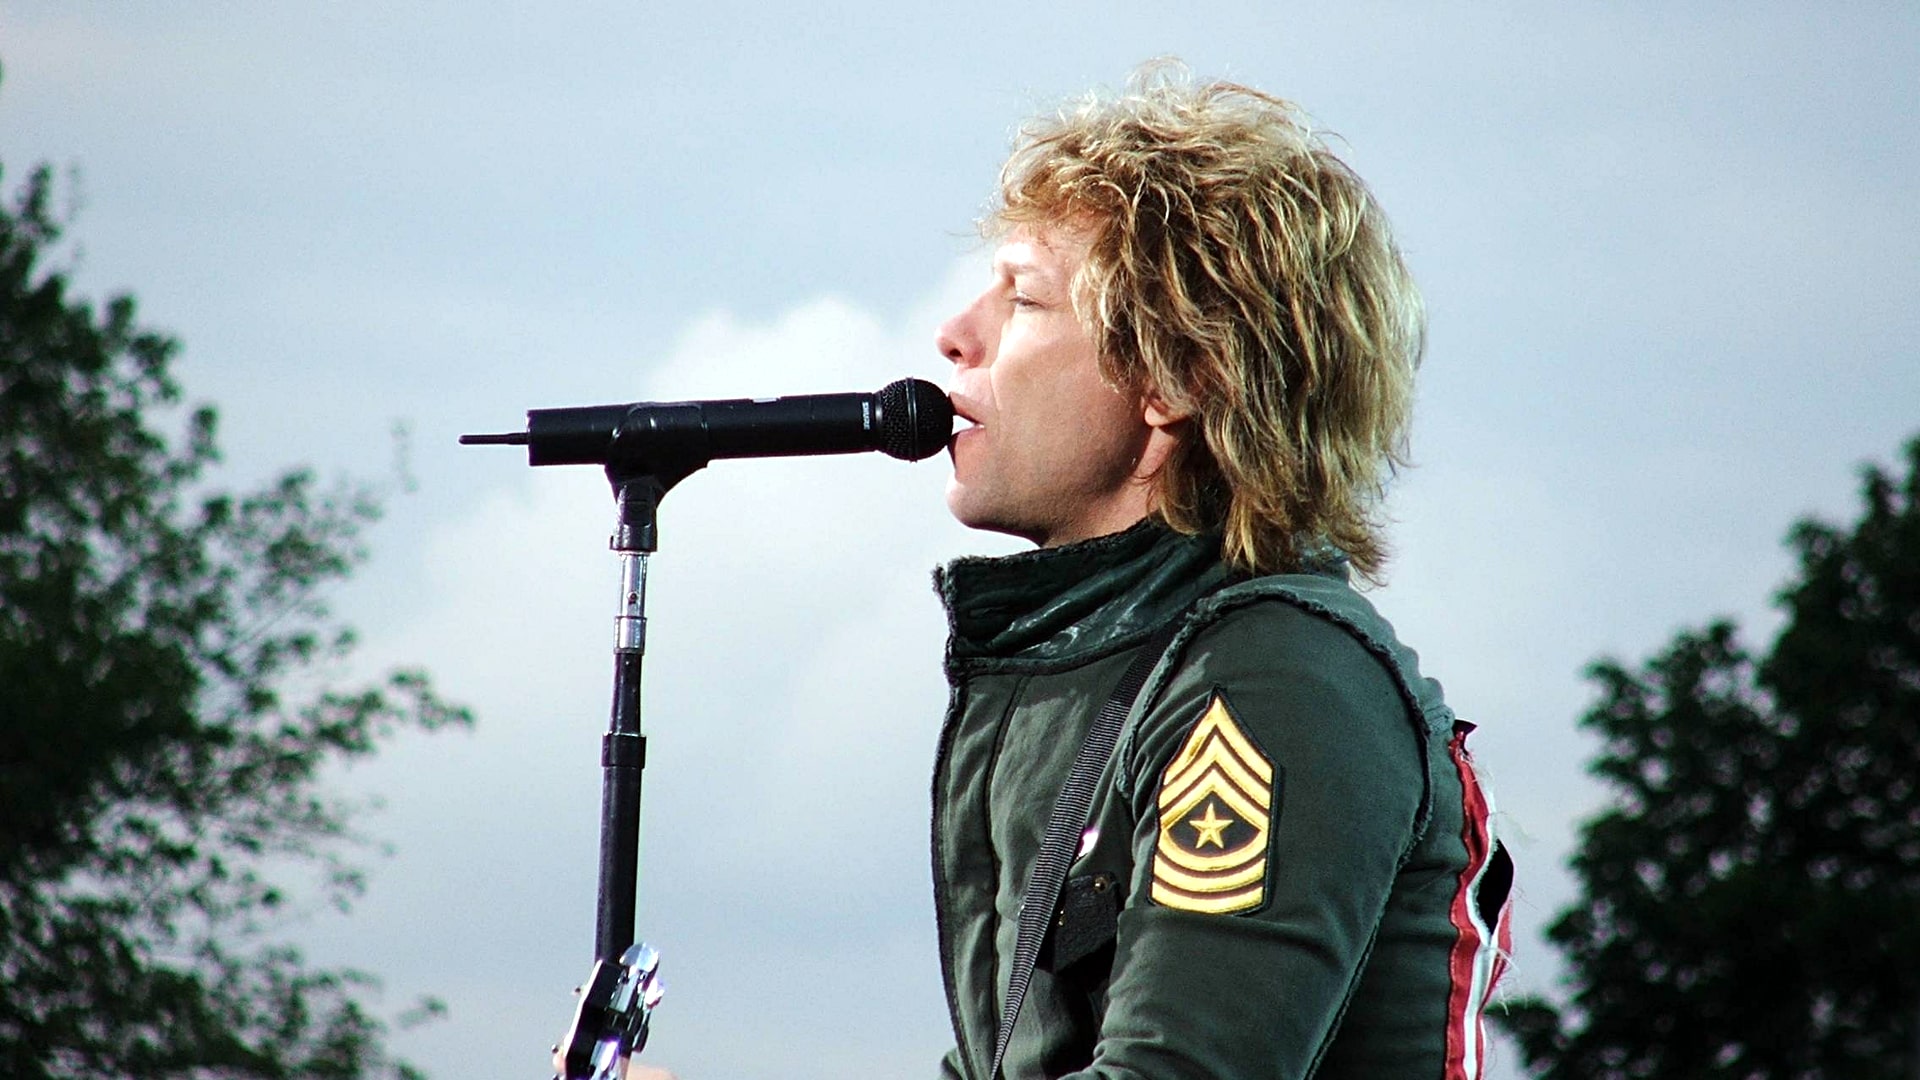 Incertidumbre sobre el futuro de Bon Jovi: ¿Se retira de los escenarios debido a problemas de salud?